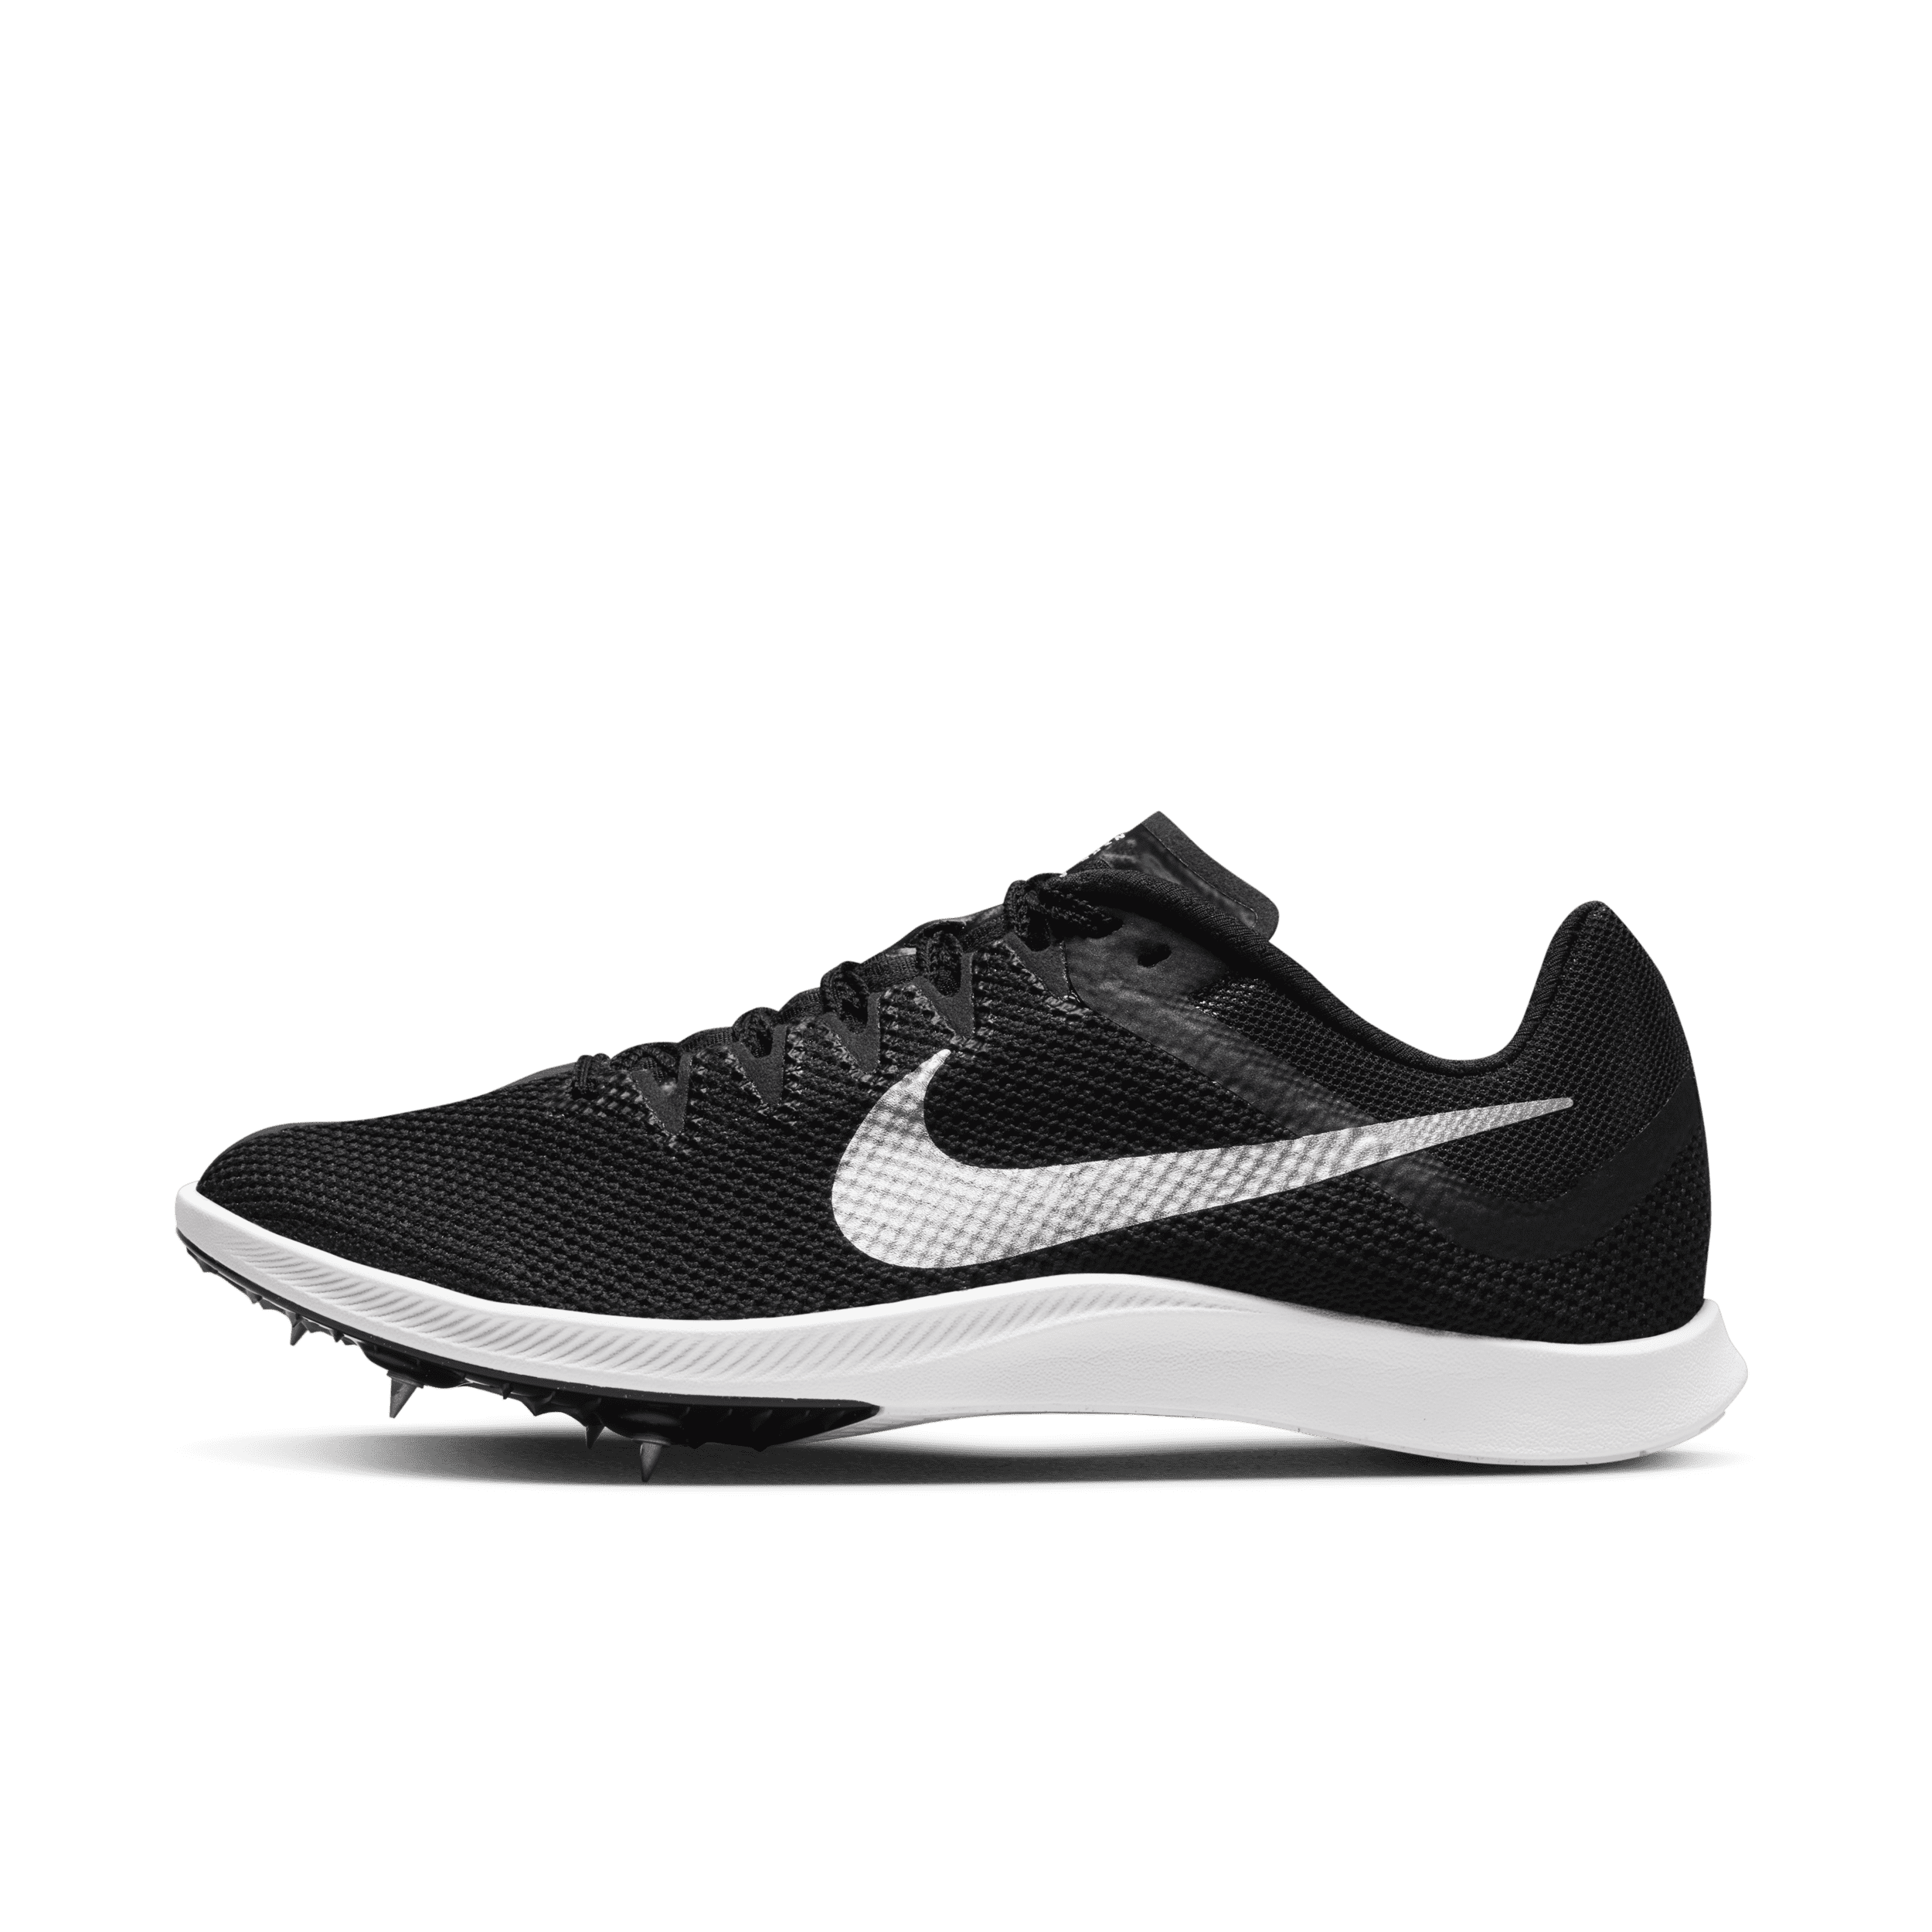 Nike Rival Distance-pigsko til stadionatletik og distancer - sort